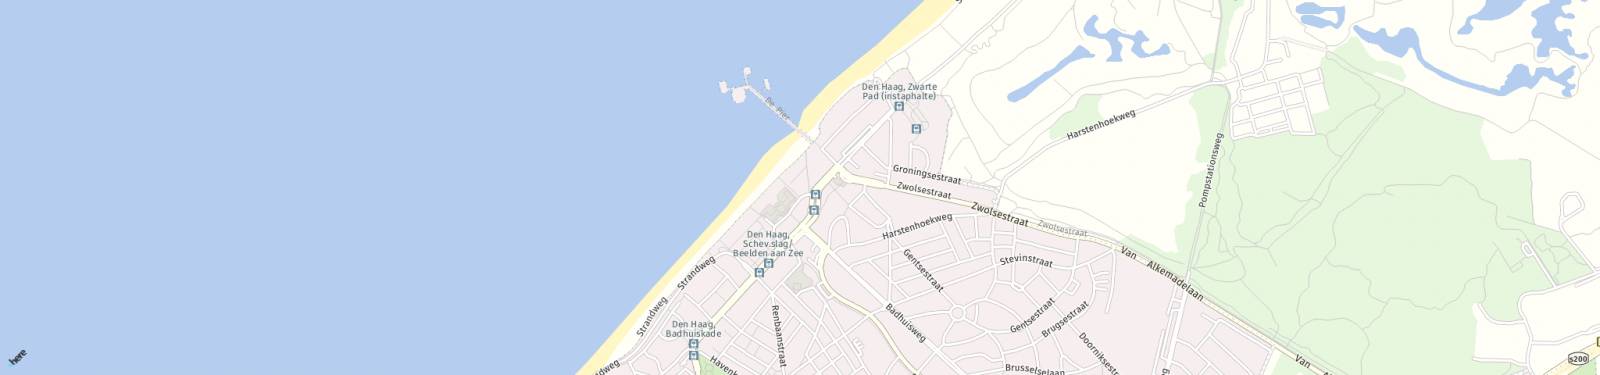 Kaart met locatie Appartement Gevers Deynootweg